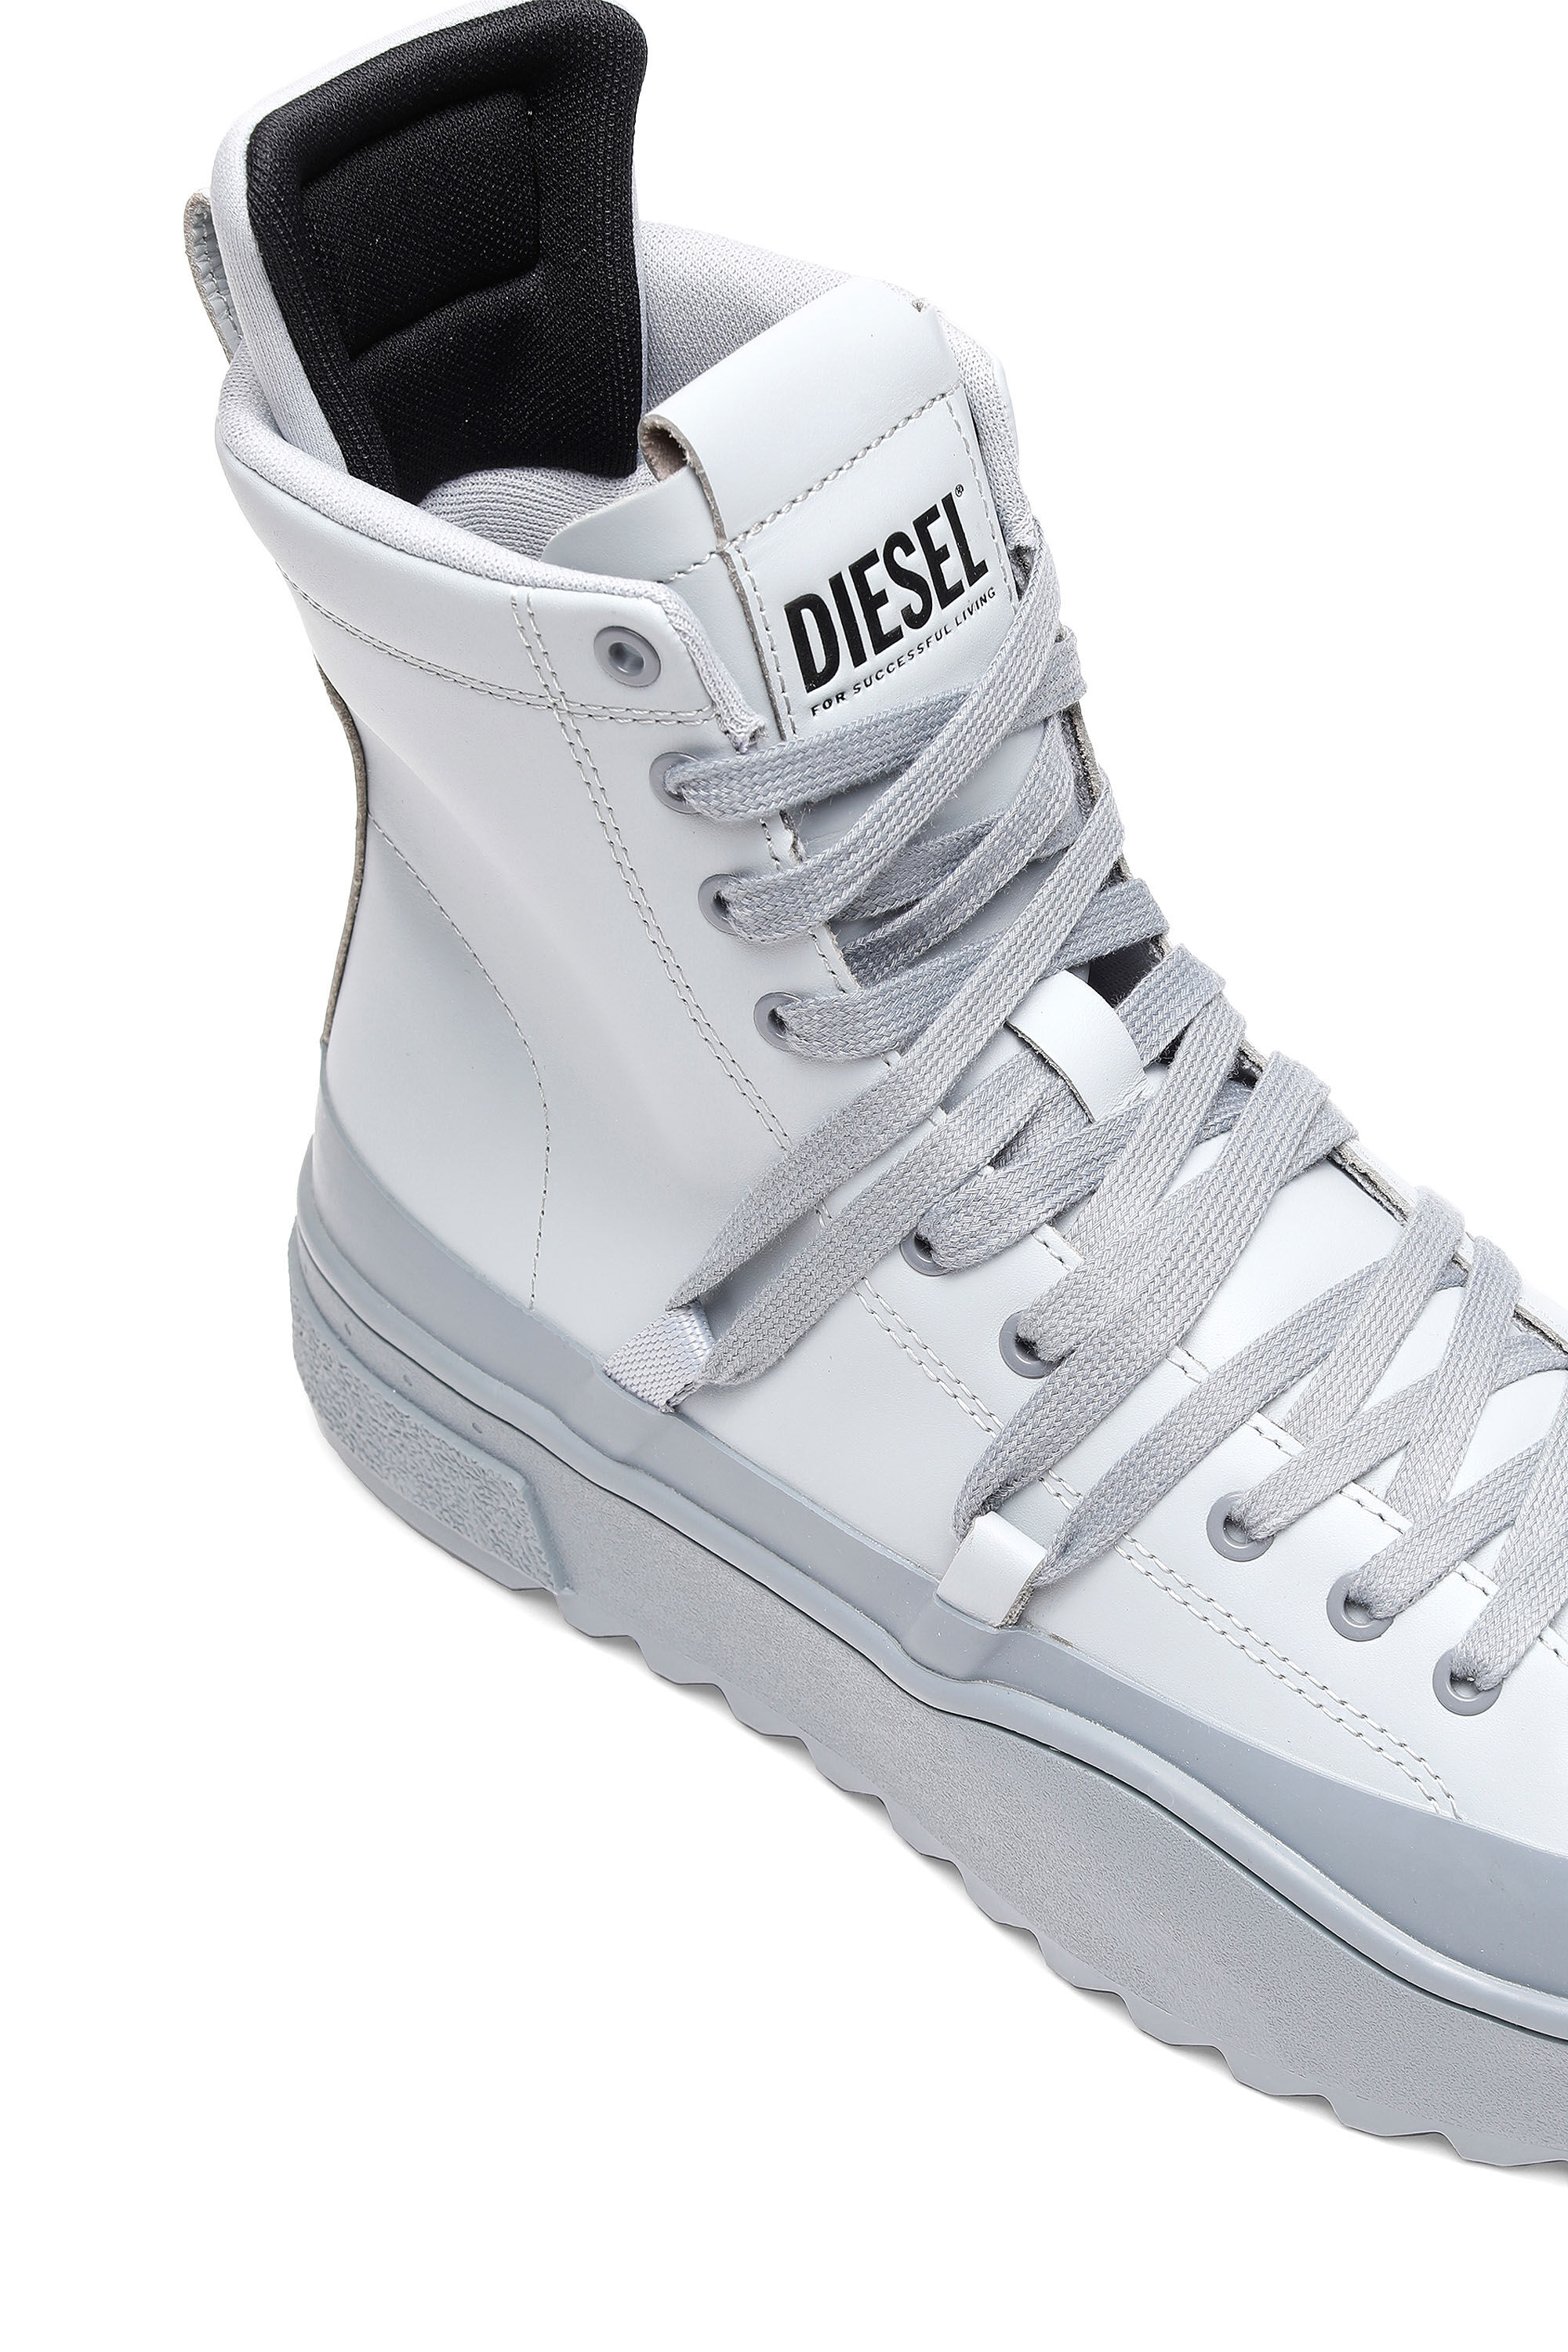 Diesel - H-SHIKA HB, White/Grey - Image 5